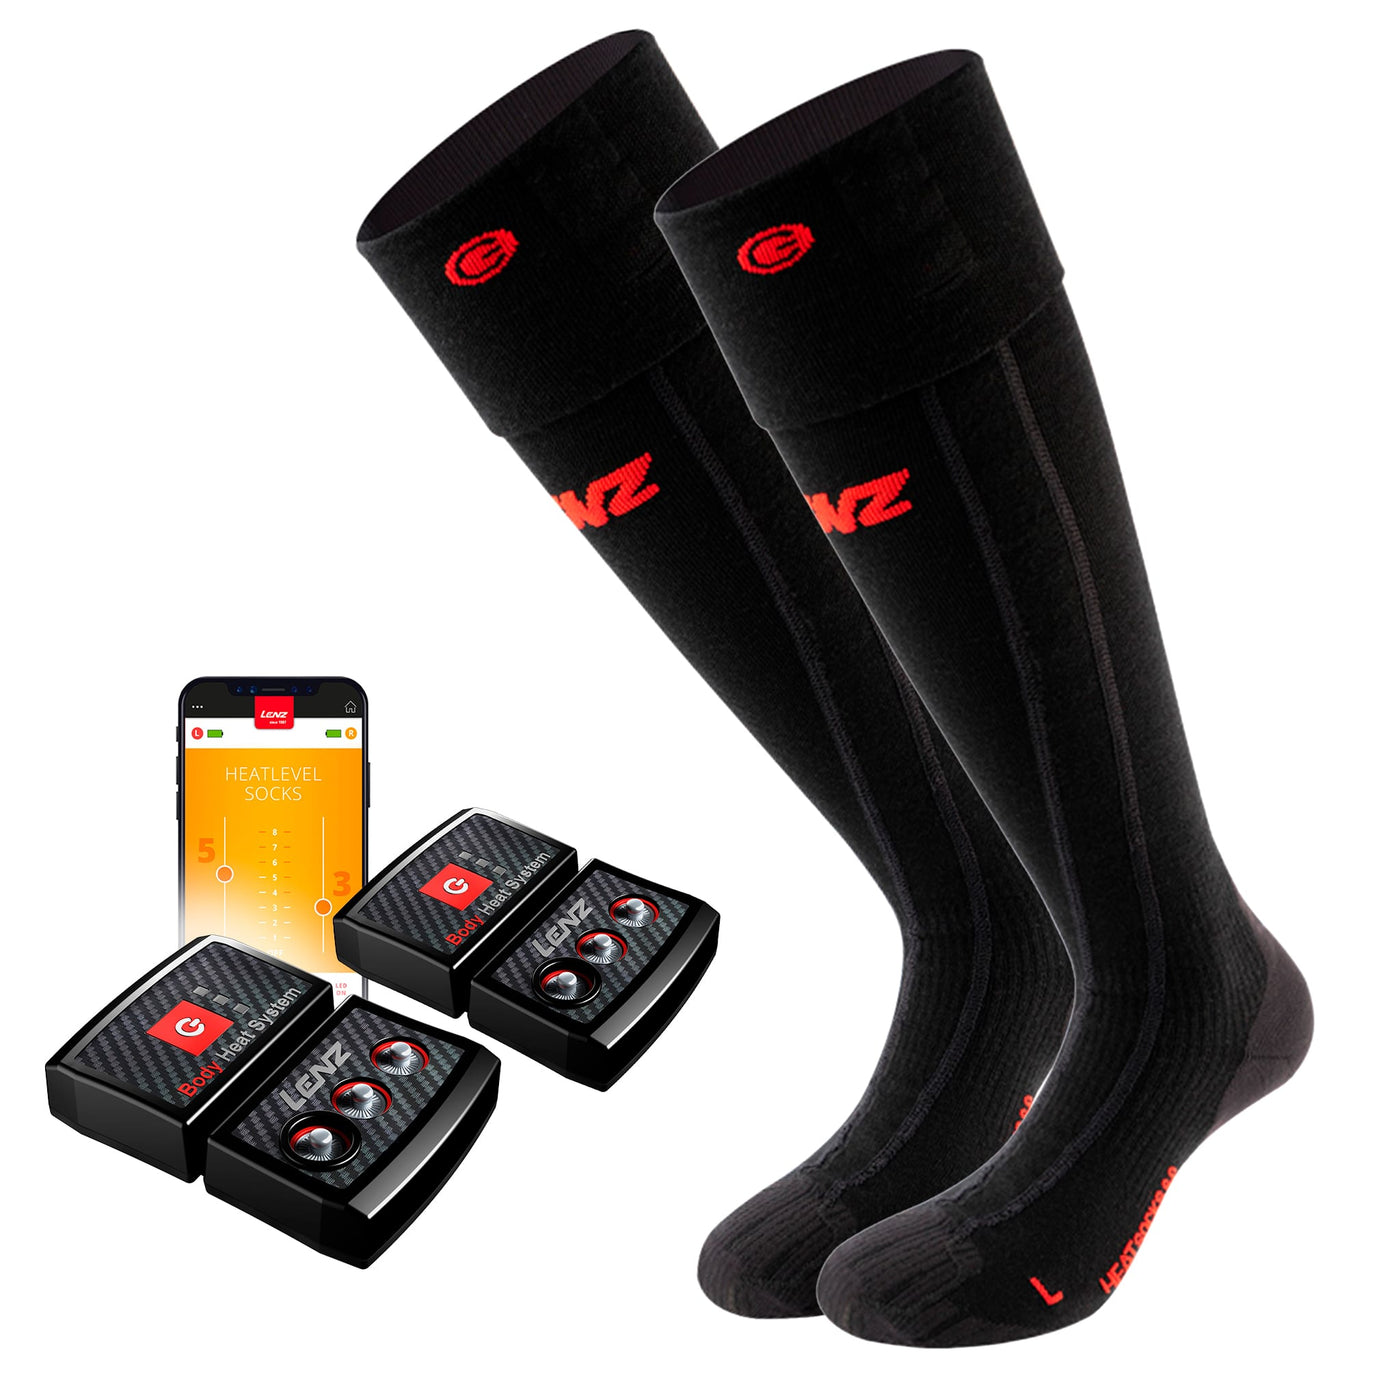 Lenz Heat Sock 6.1 Toe Cap Merino Compression Set